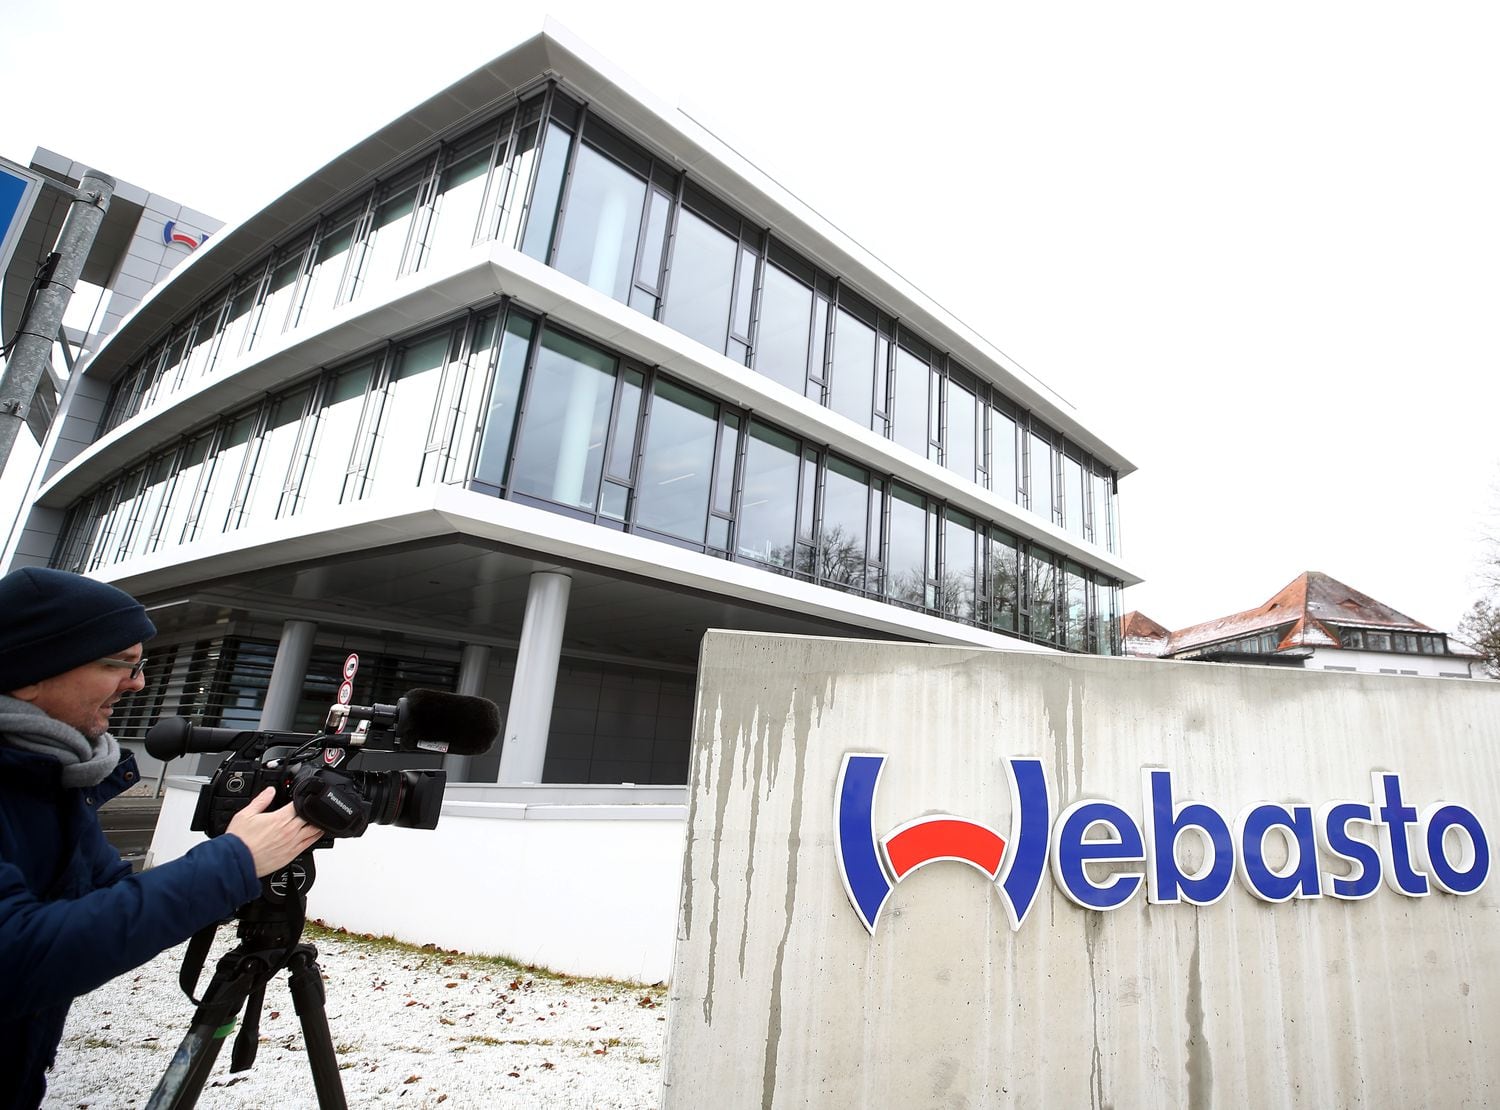 Sede da empresa Webasto em Stockdorf, perto de Munique, onde foi detectado um foco de coronavírus em janeiro.